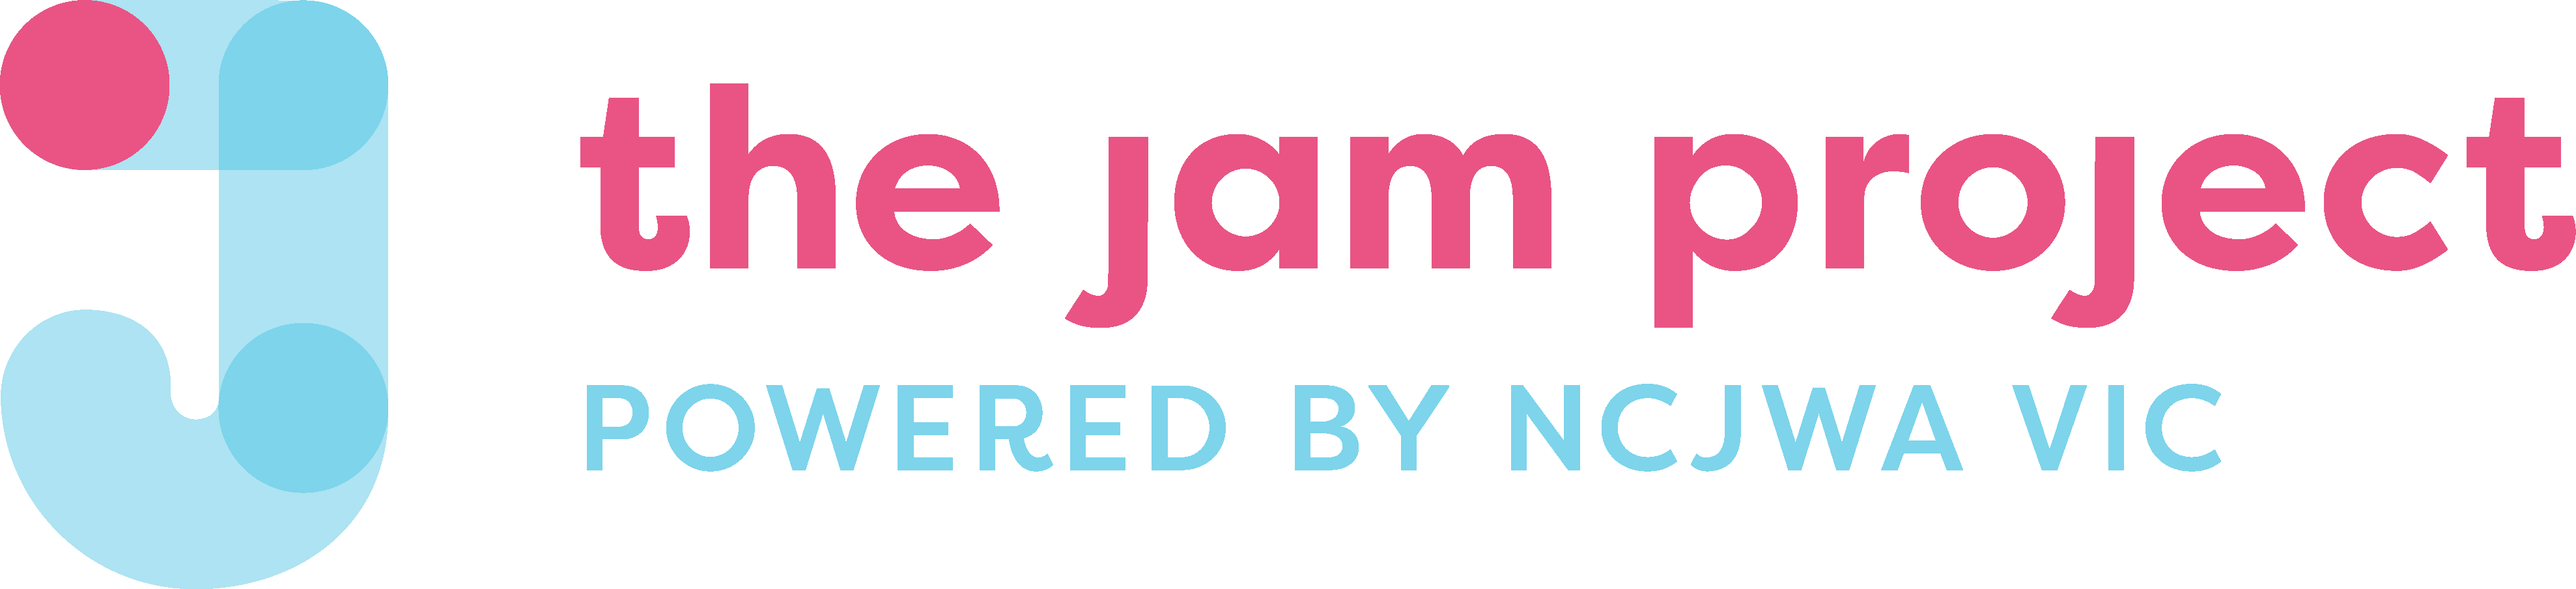 JamLandscape-logo